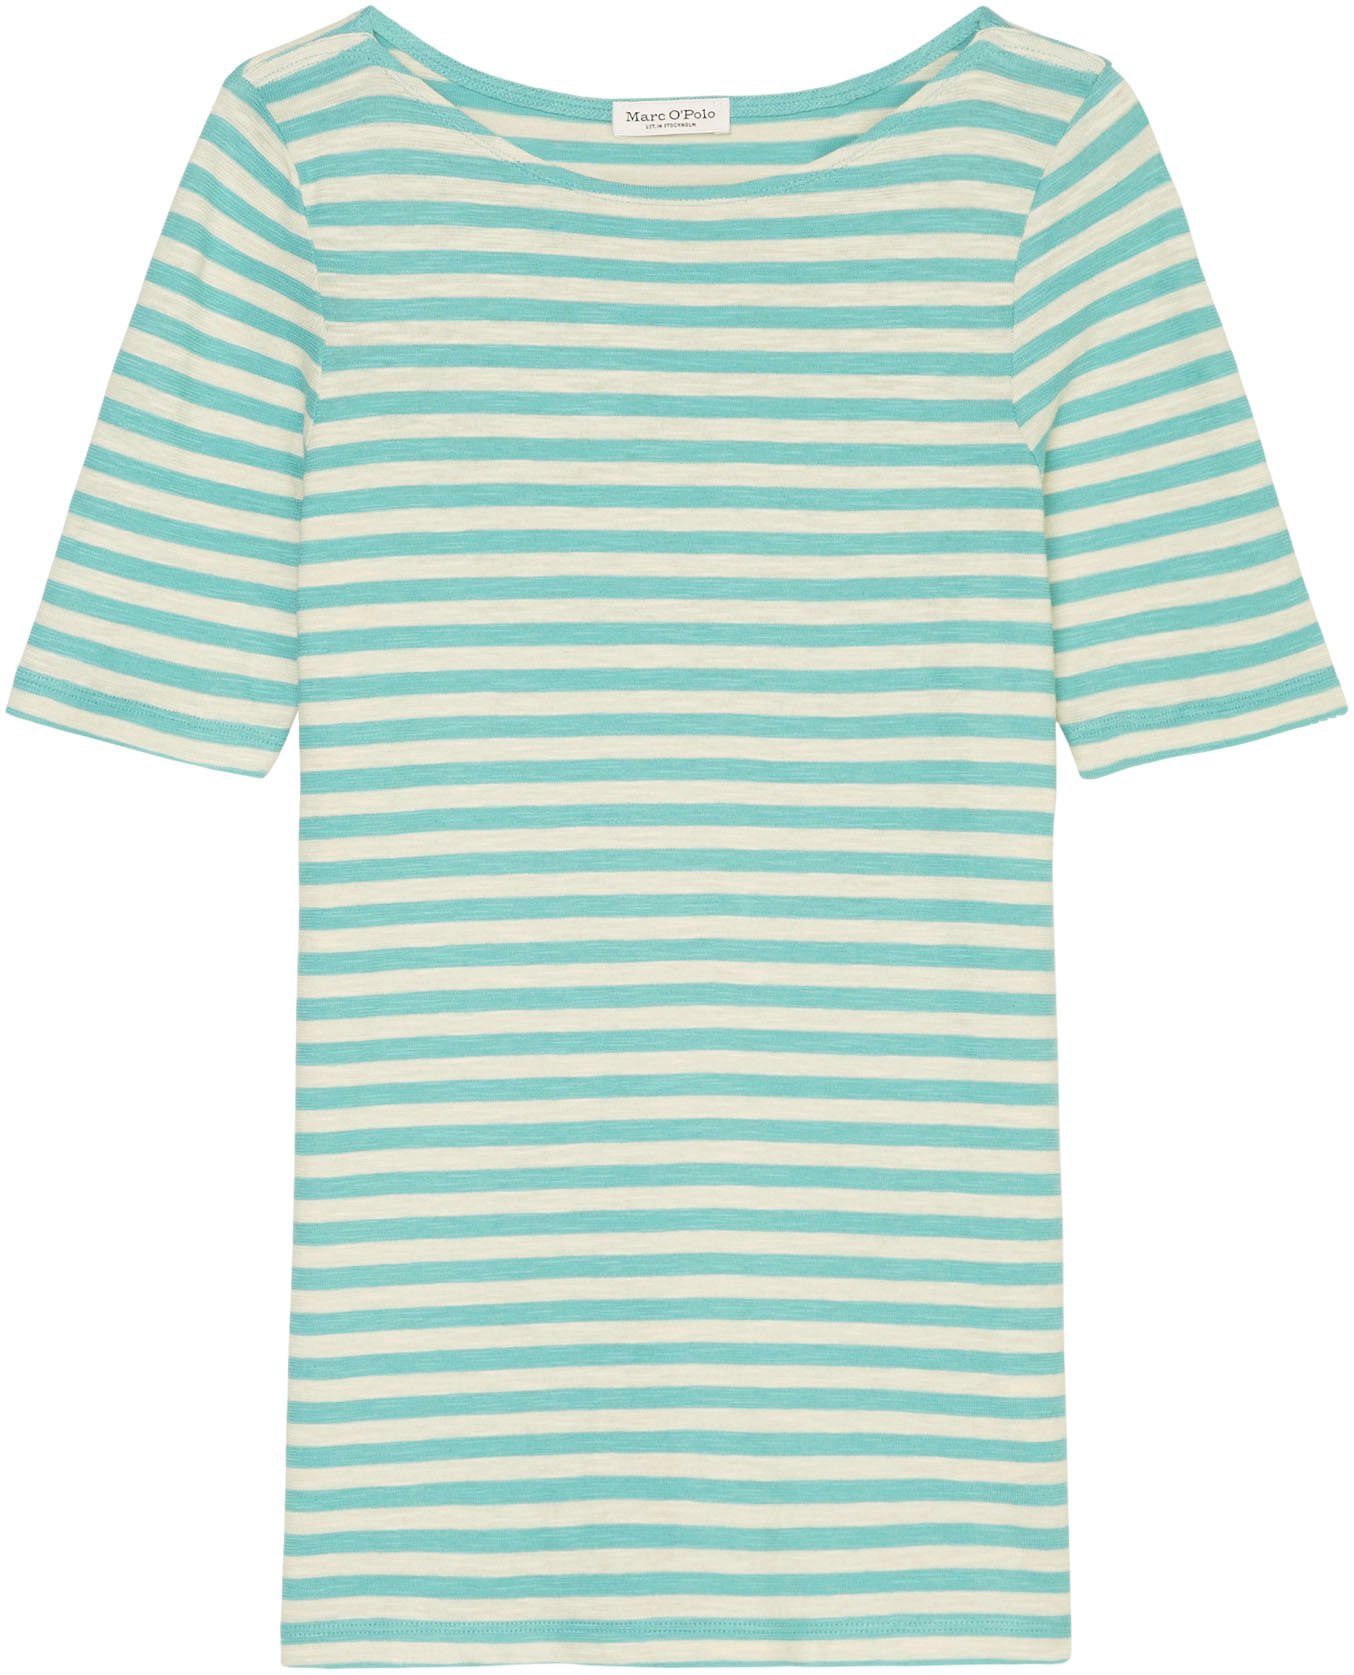 Marc O'Polo T-Shirt multi/sea blue